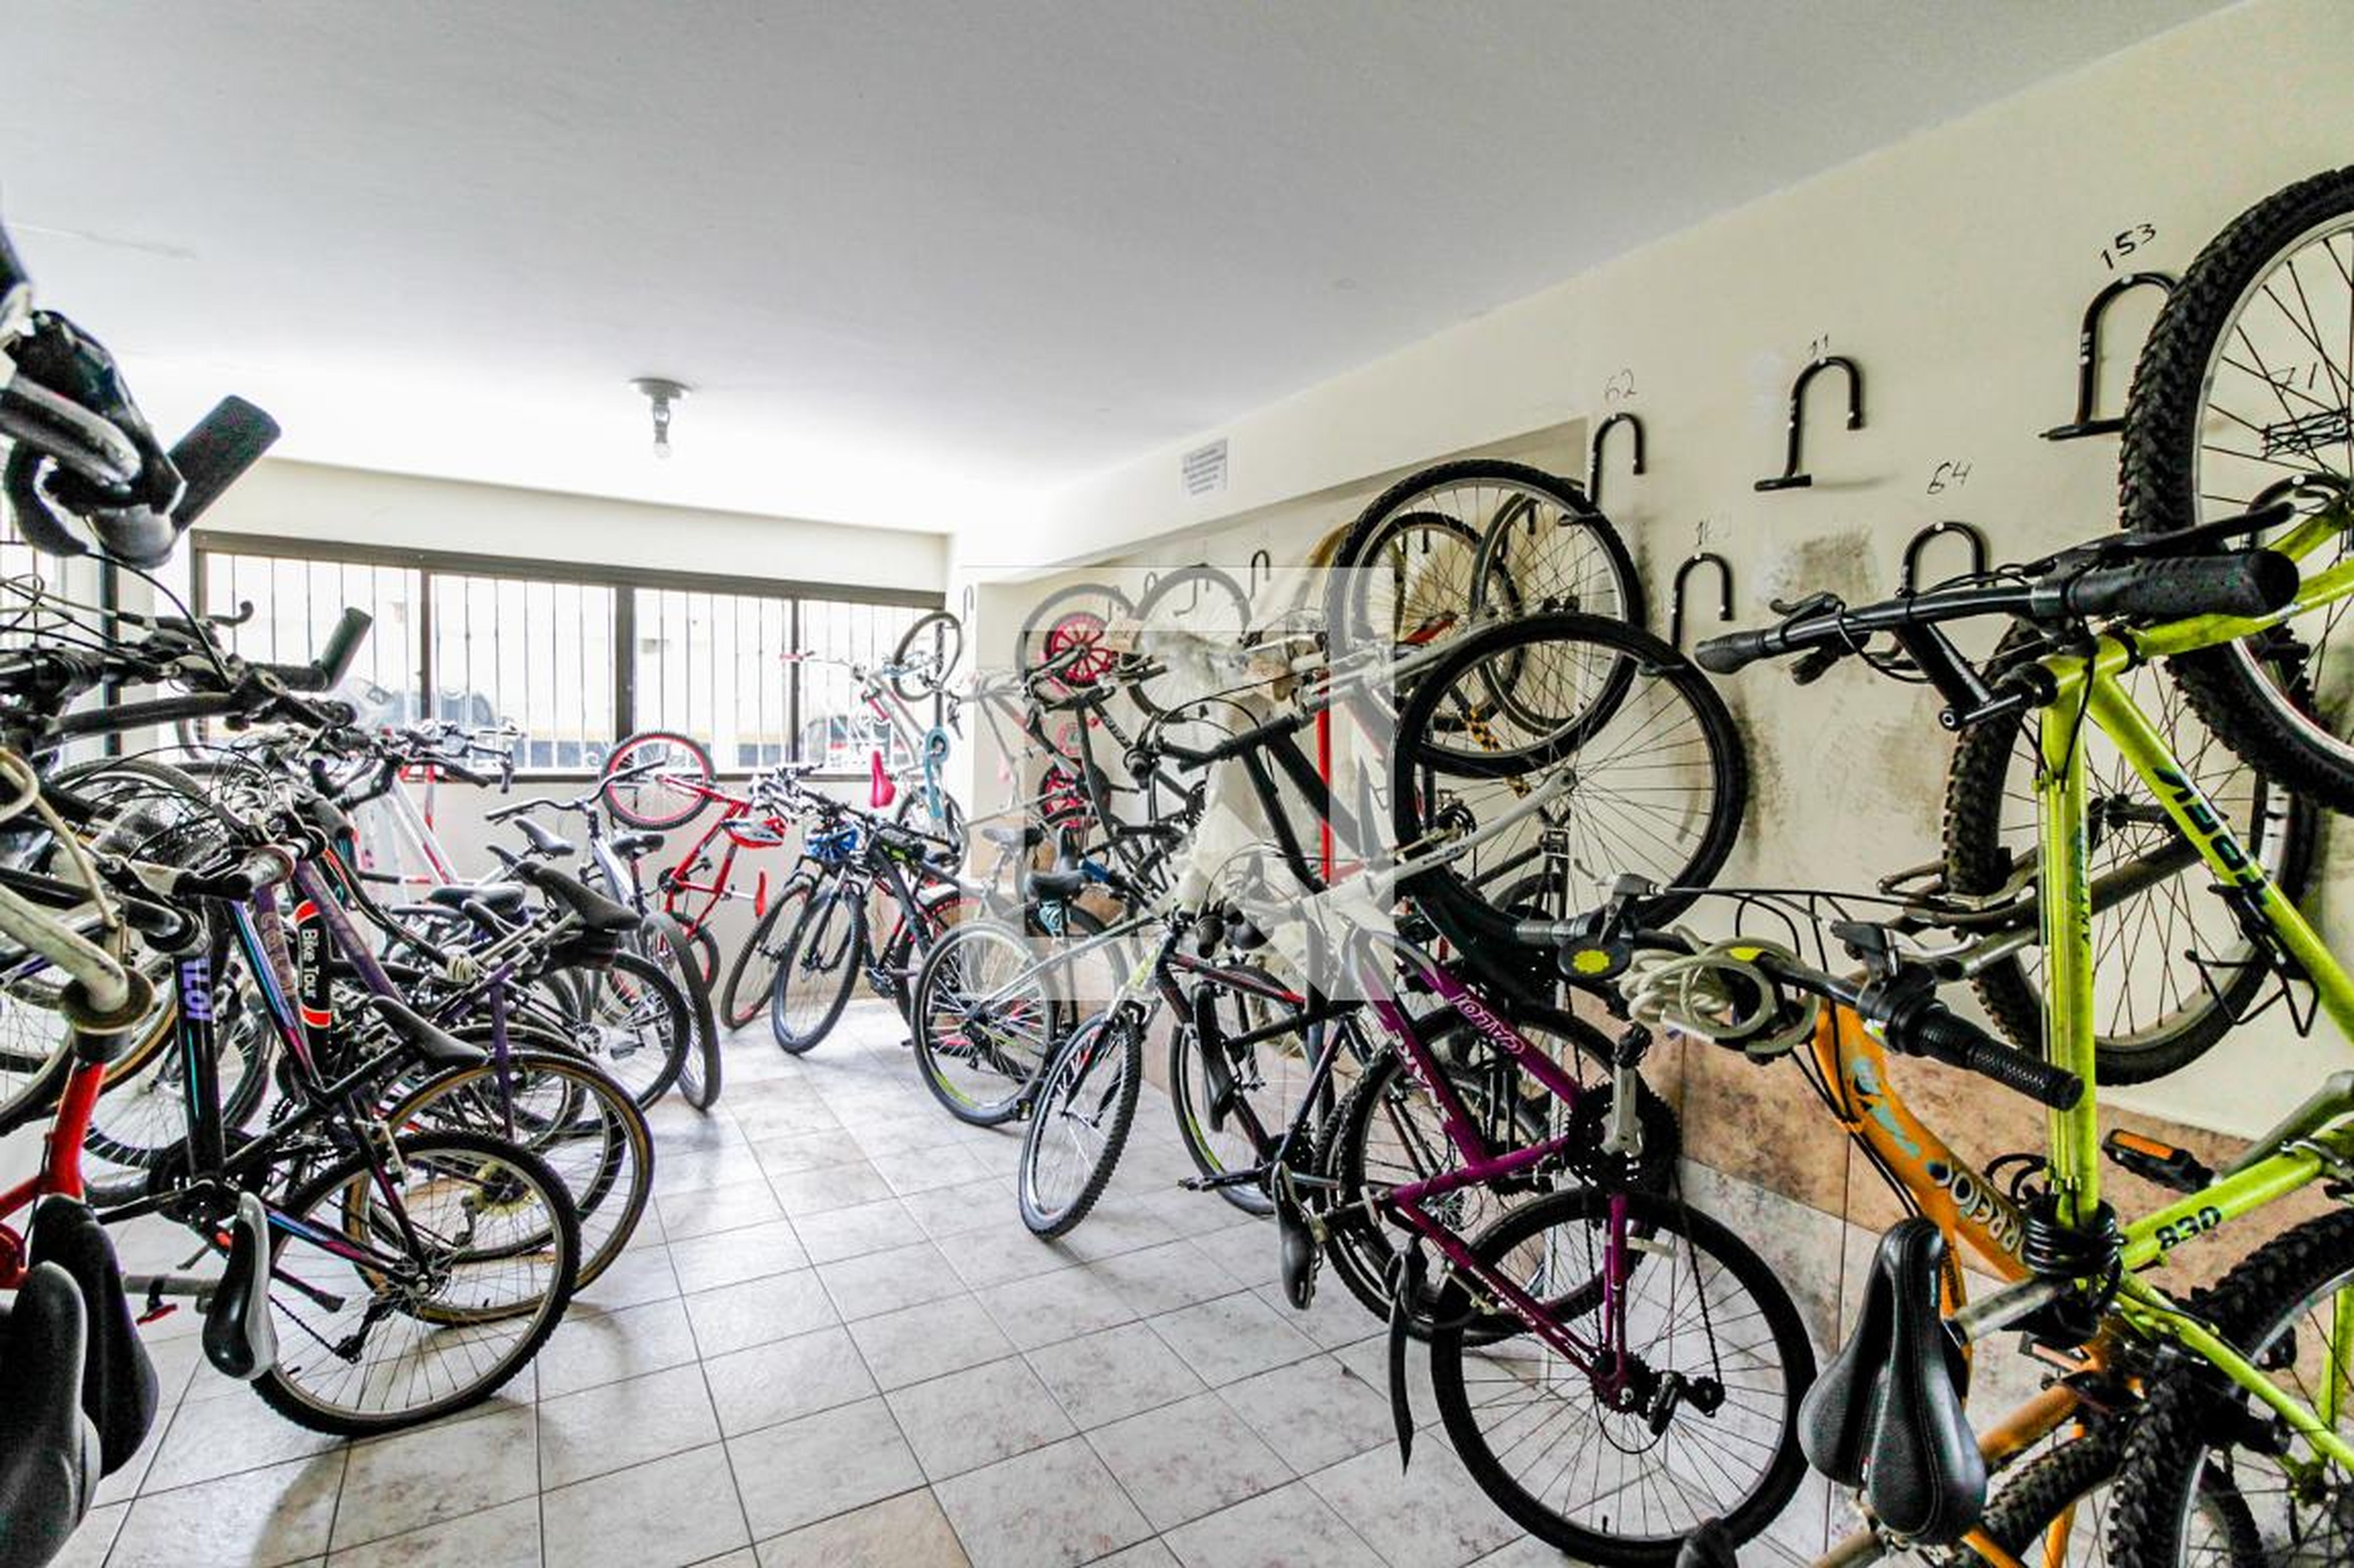 Bicicletario - Edifício Girassol